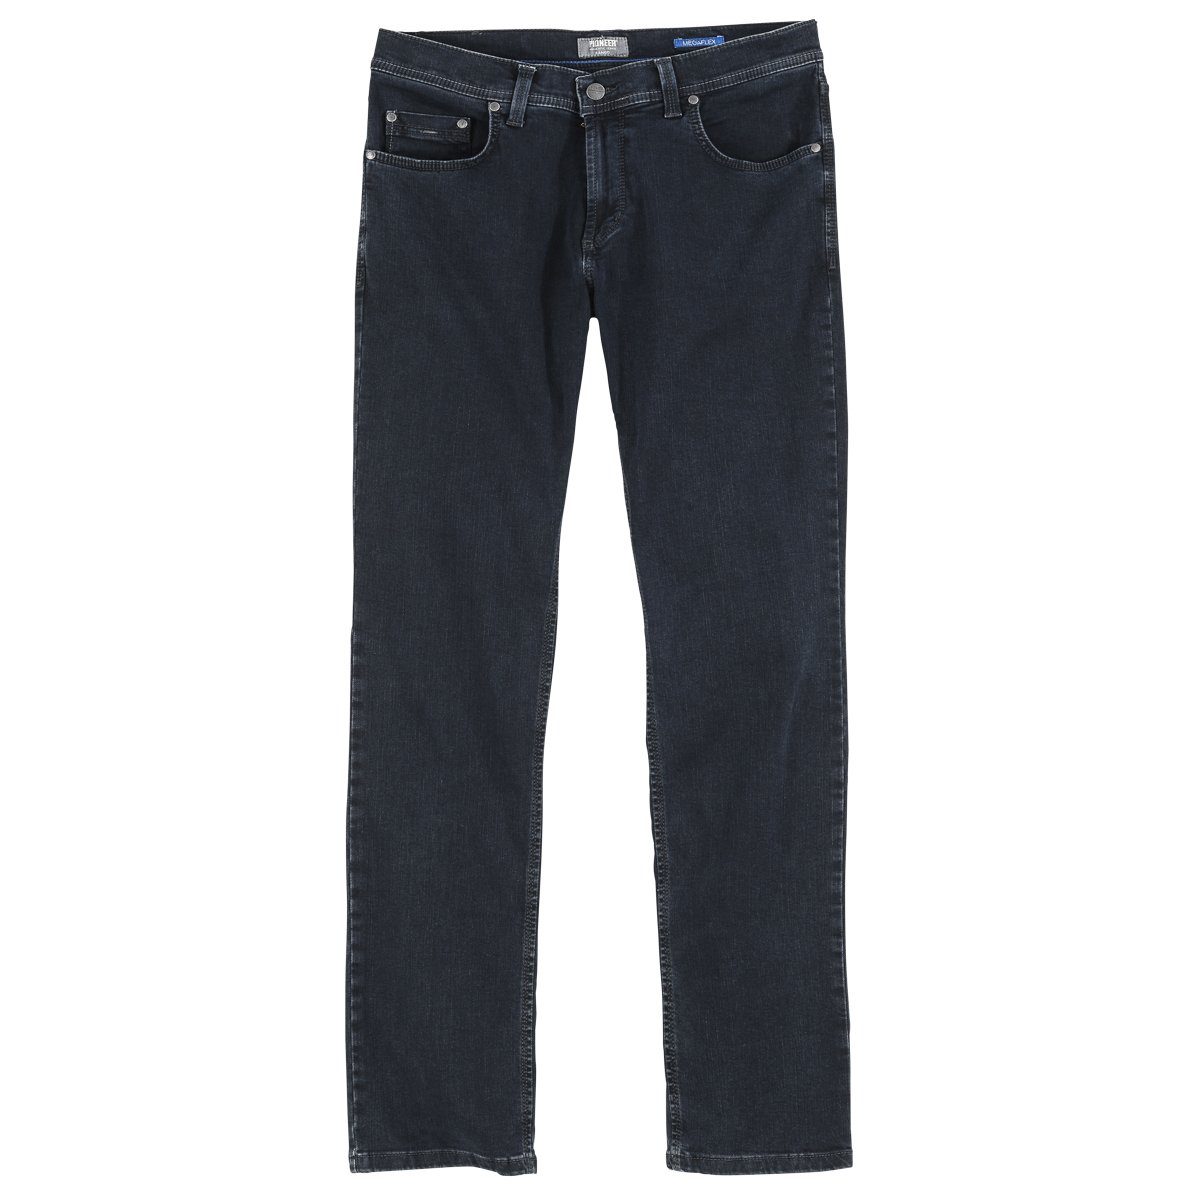 Pionier Bequeme Jeans Übergrößen Jeans black Megaflex blue rinse Rando Pioneer